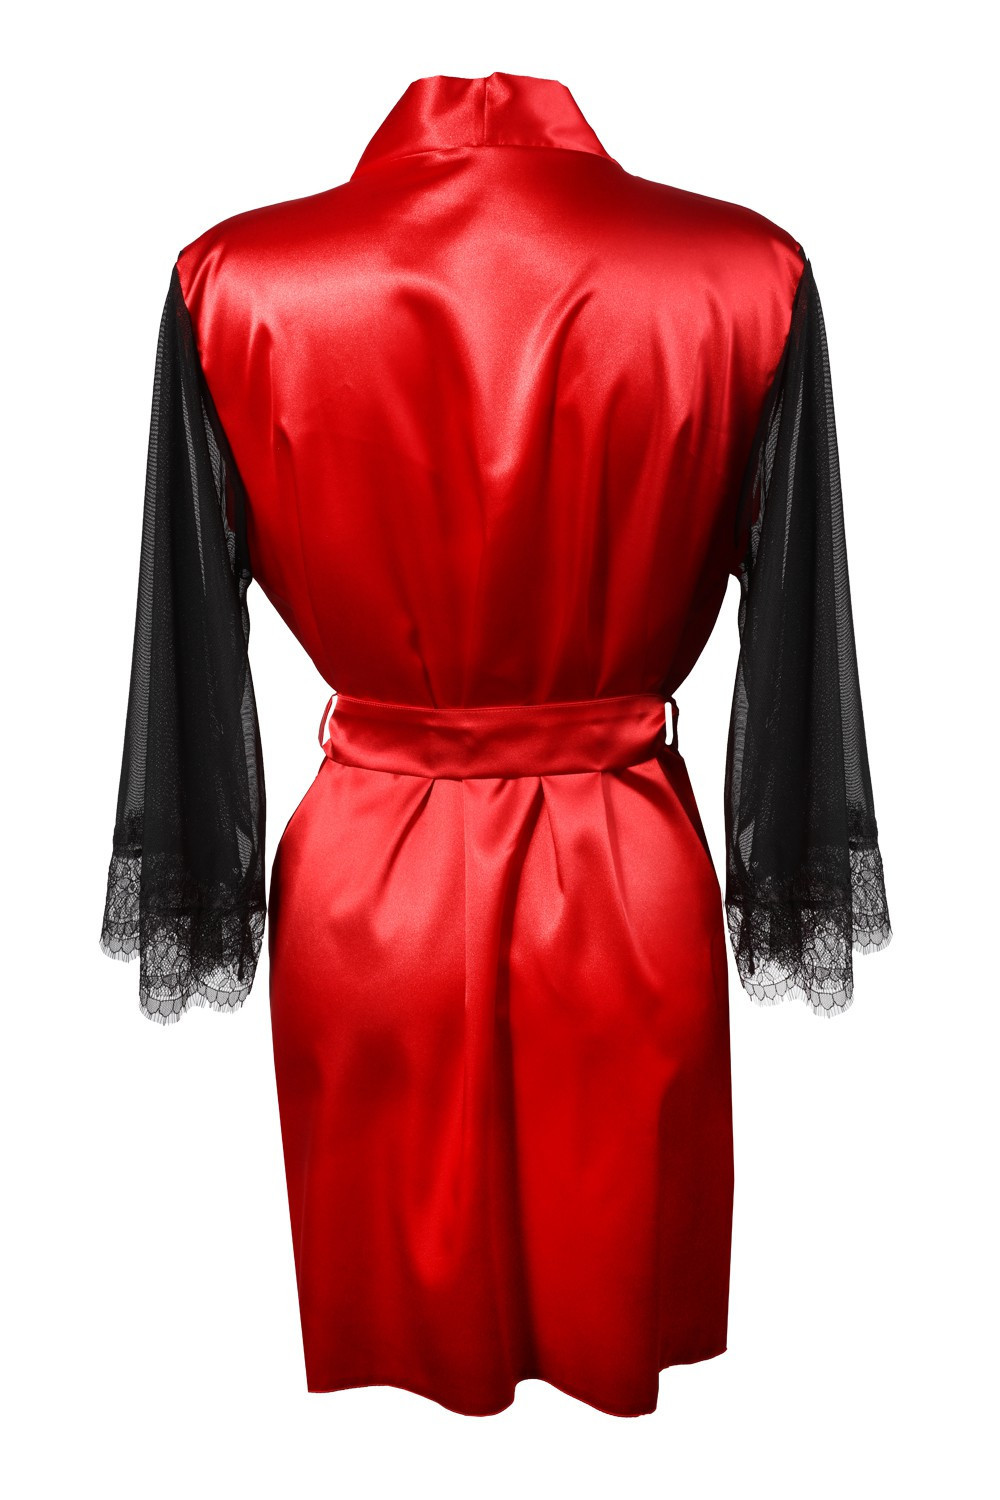 DKaren Housecoat Bonnie Red L červená